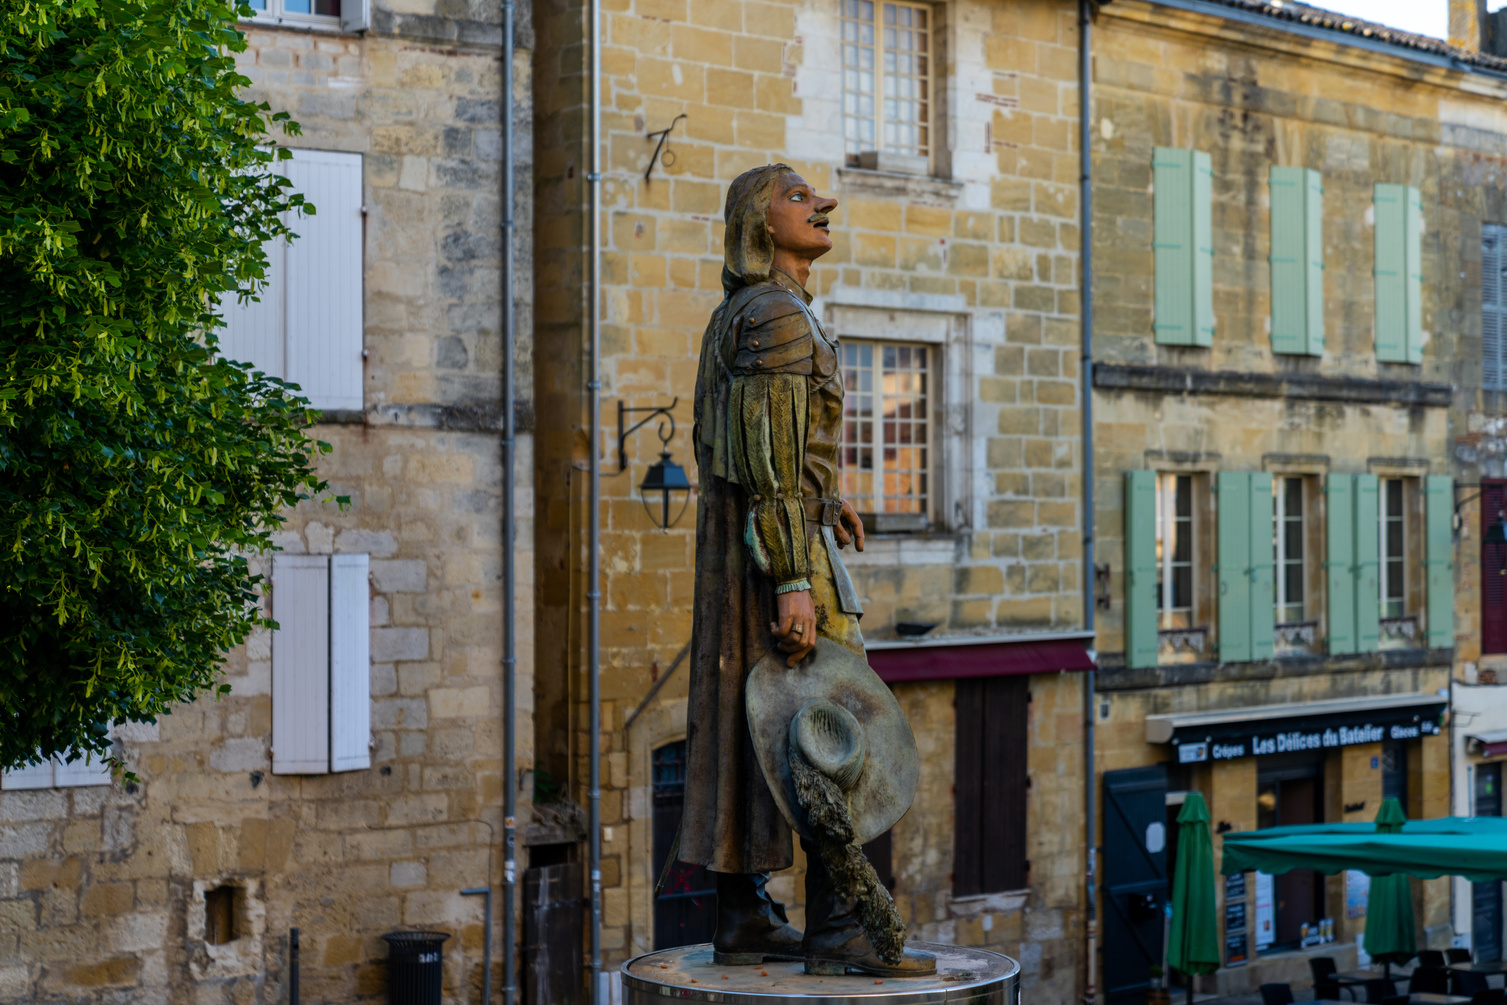 the statue of Cyrano de Bergerac in the historic city center